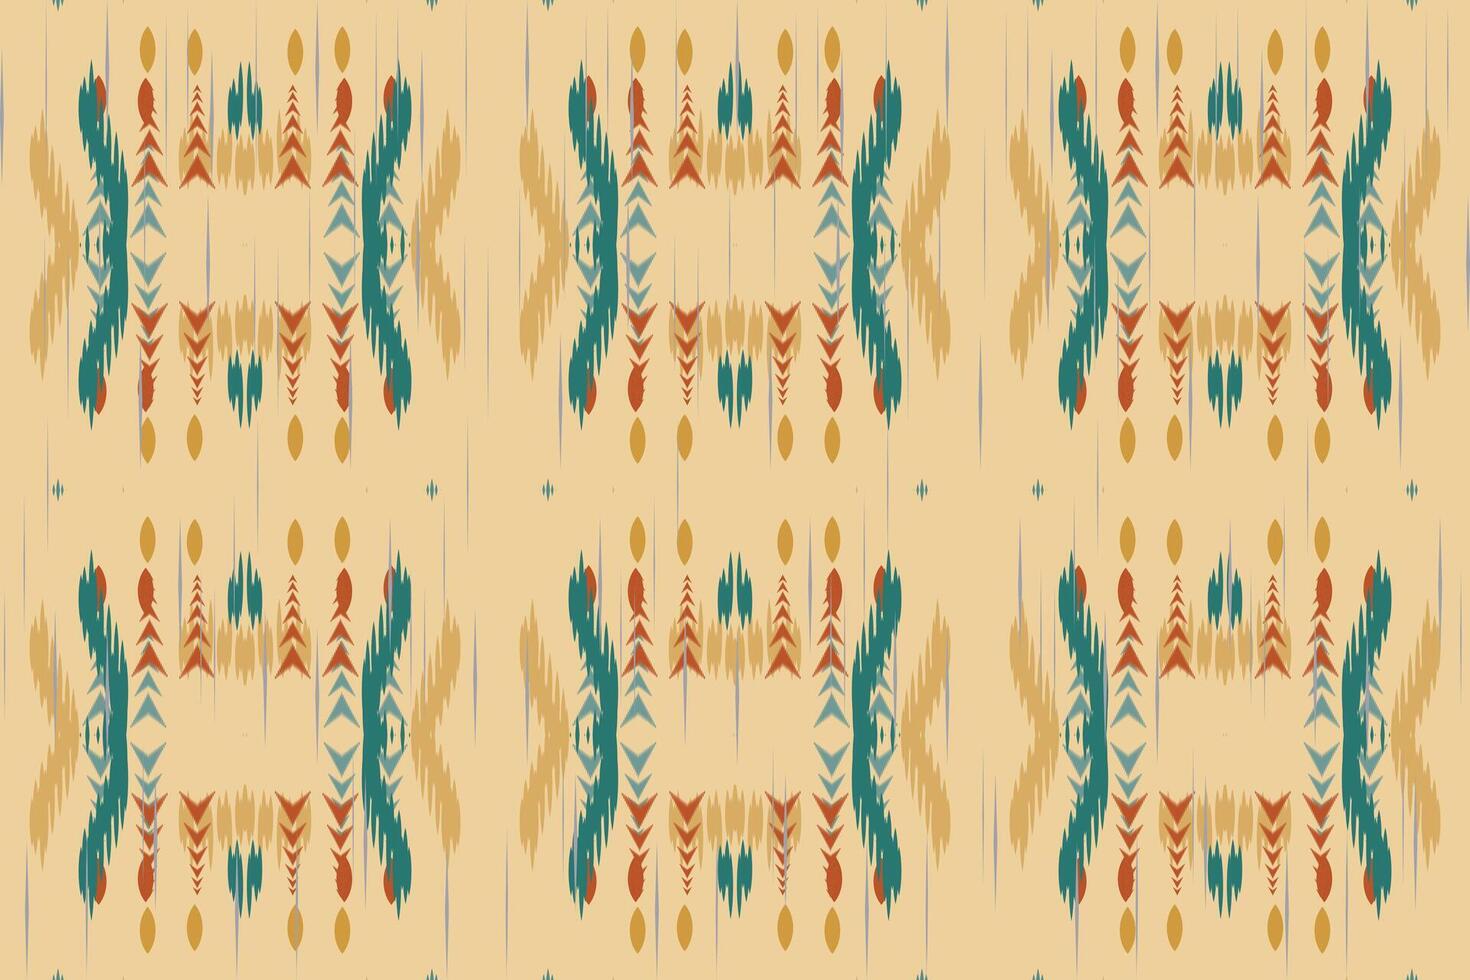 ikat floreale paisley ricamo su bianca sfondo.ikat etnico orientale modello tradizionale.azteco stile astratto vettore illustrazione.disegno per trama, tessuto, abbigliamento, avvolgimento, decorazione, sciarpa, tappeto